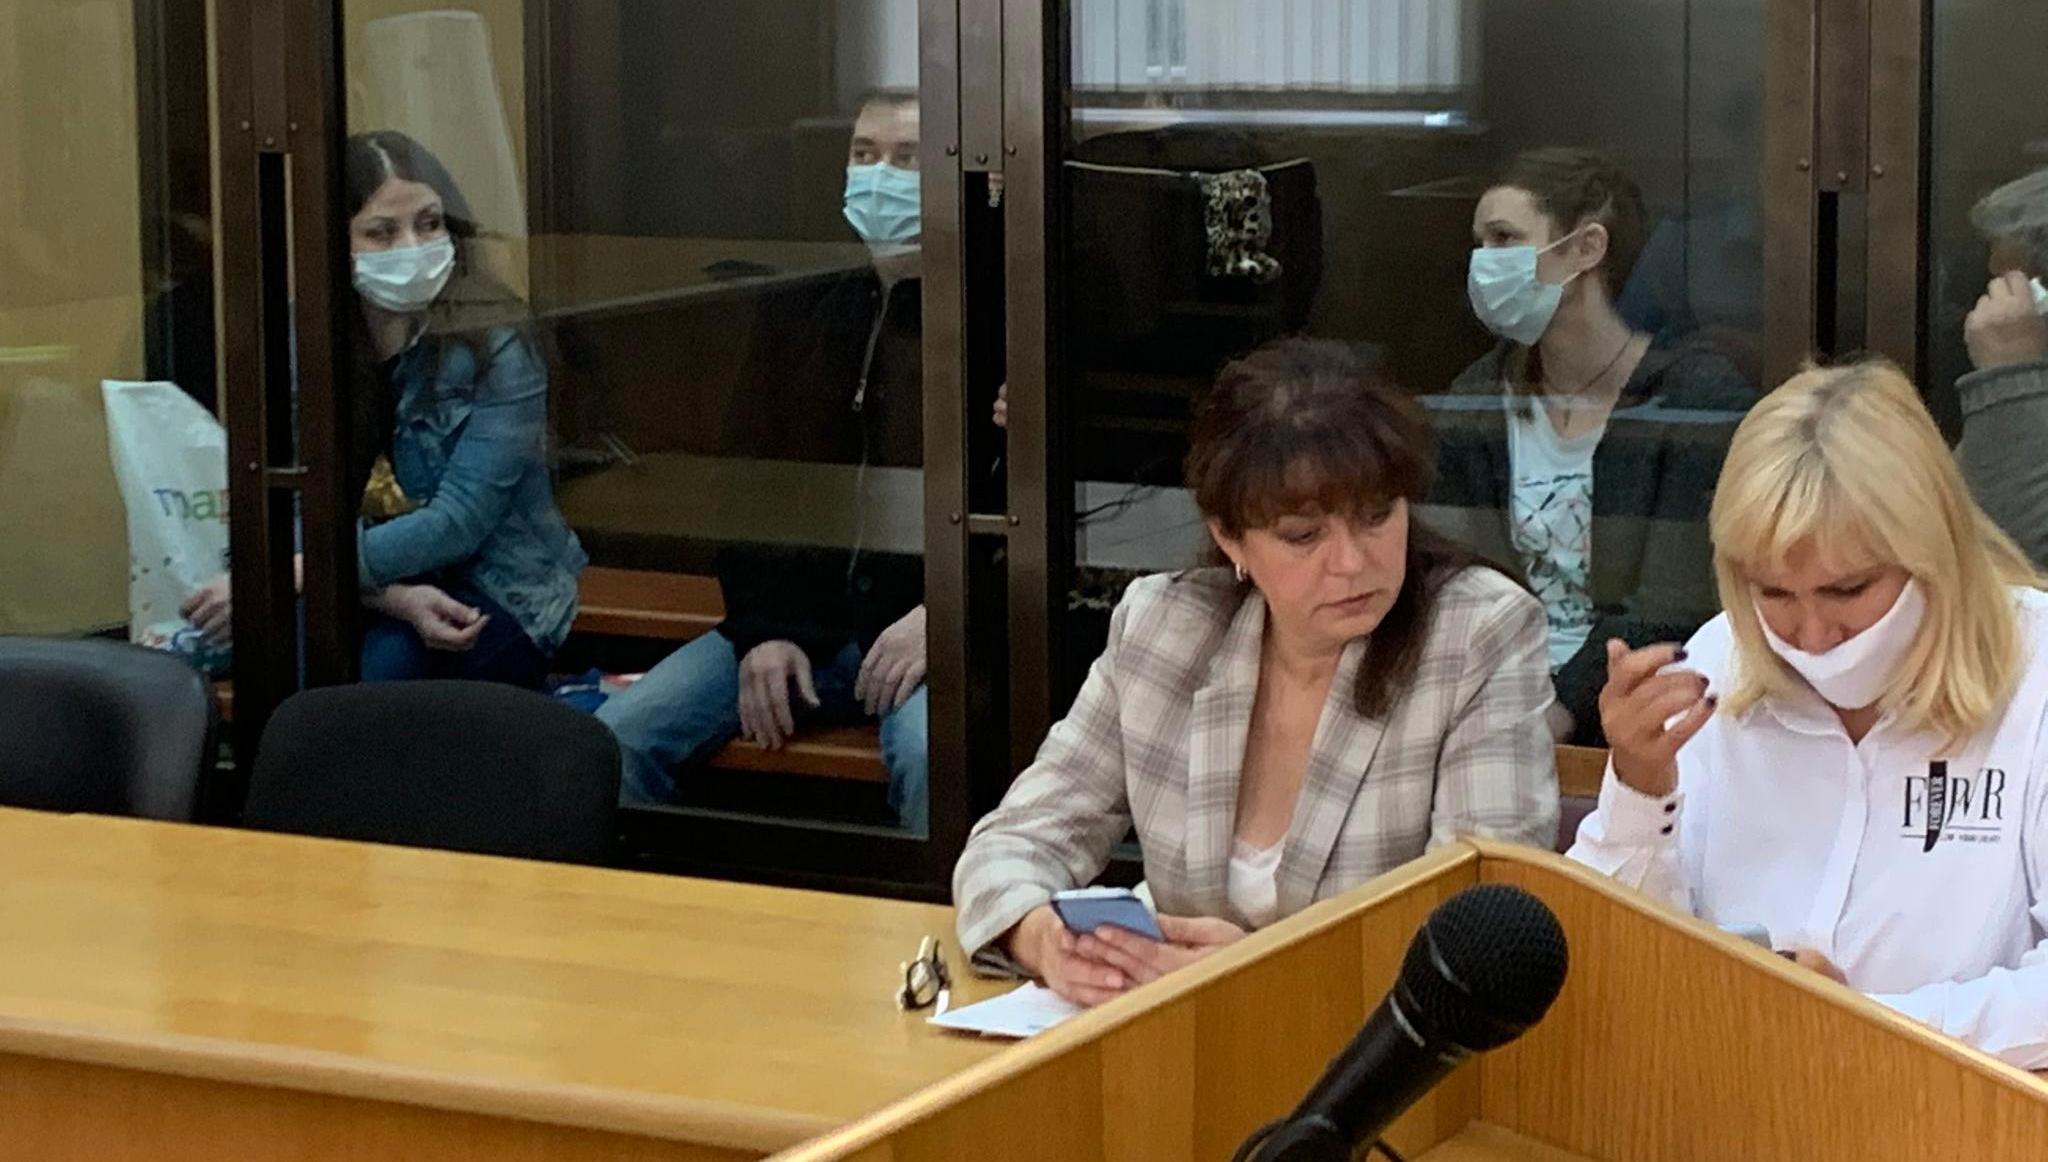 Оставлен без изменения приговор по делу «черных риелторов», вынесенный в Тверской области